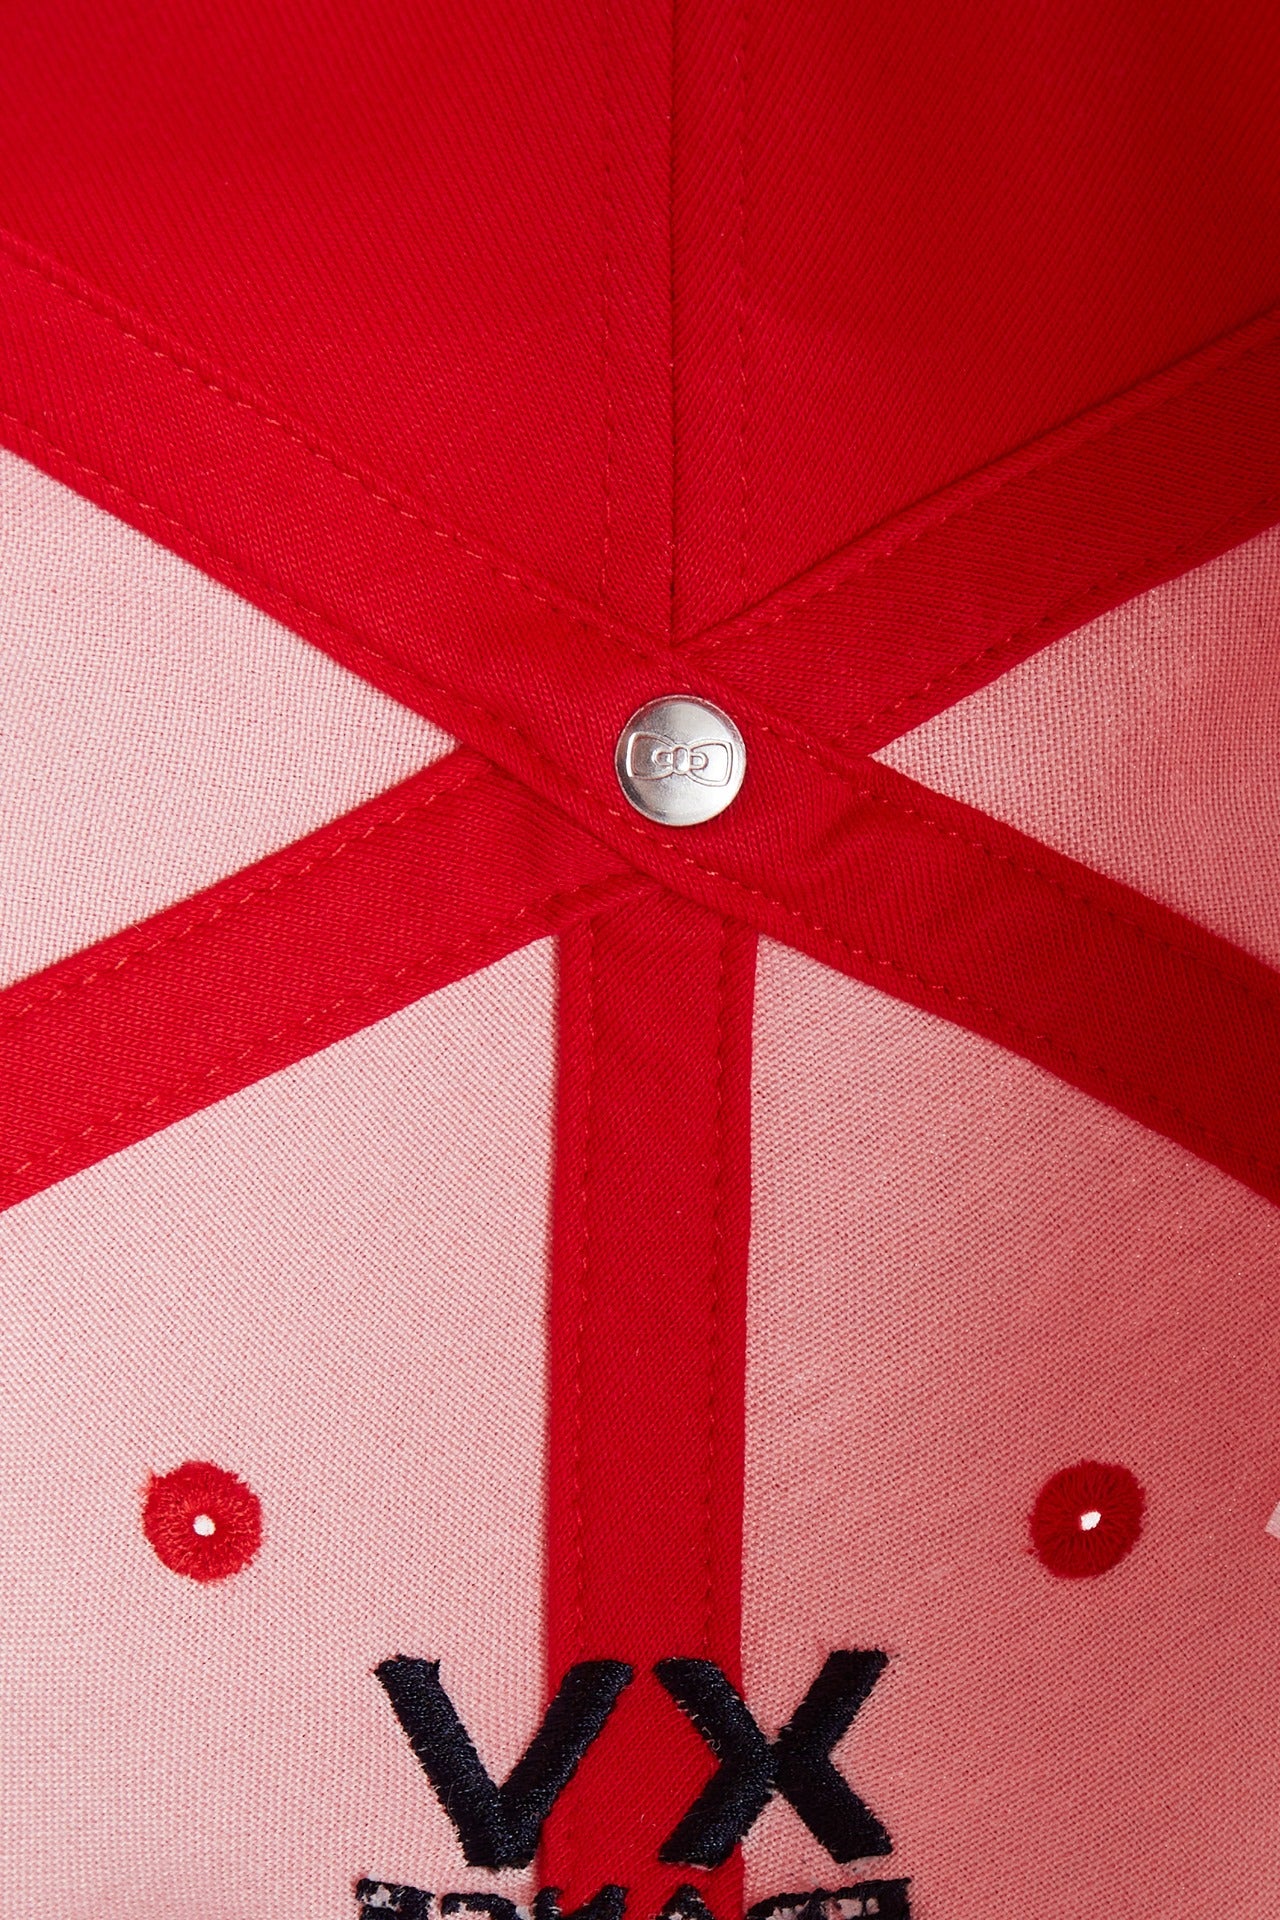 Casquette en coton bicolore marine et rouge emblème coq - Image 3